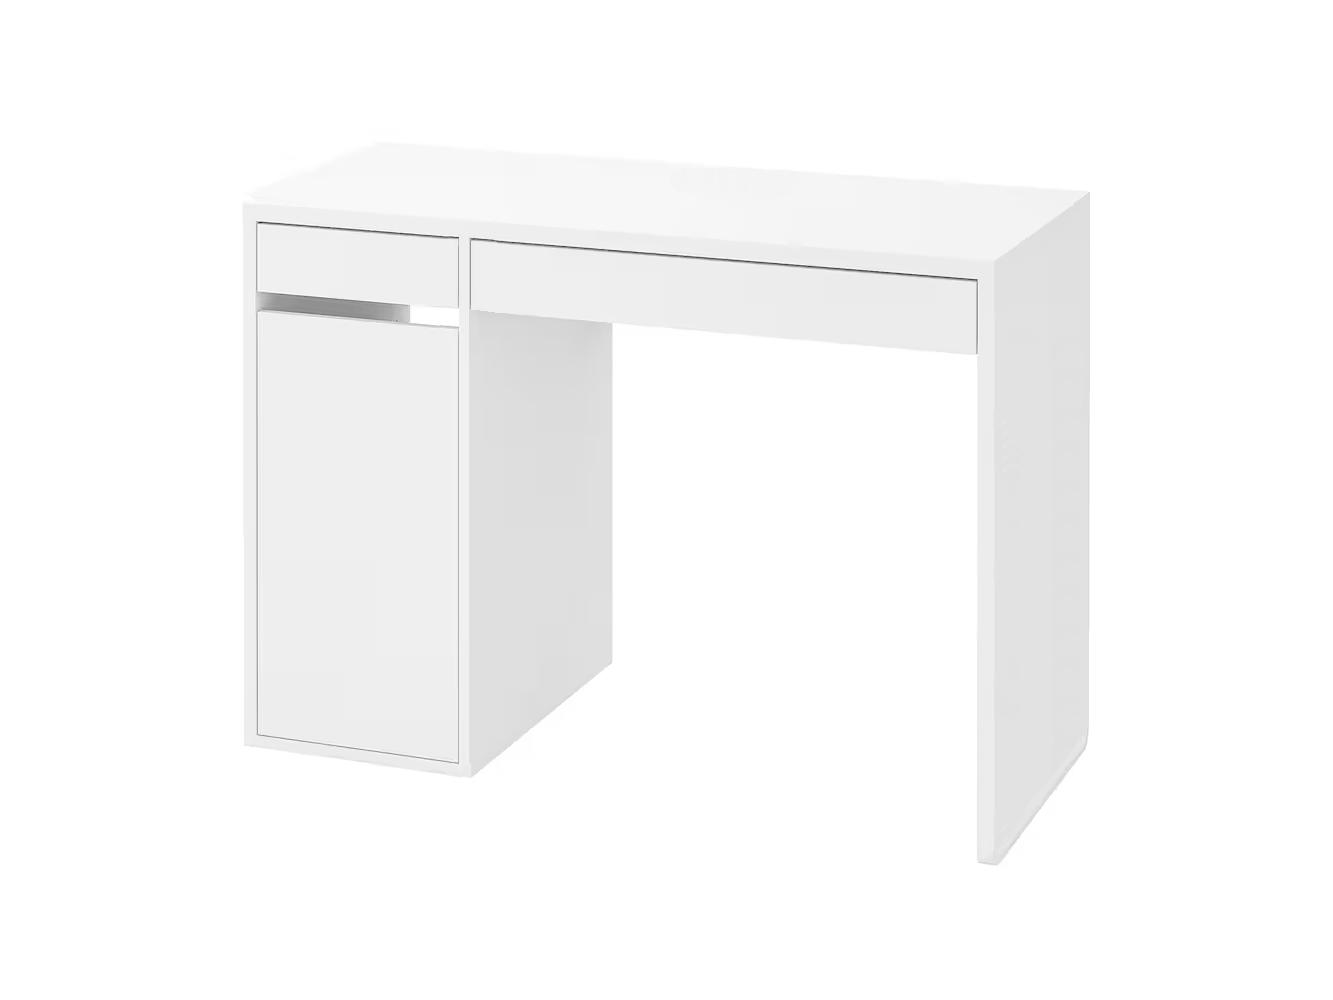 Письменный стол Мике 14 white ИКЕА (IKEA) изображение товара